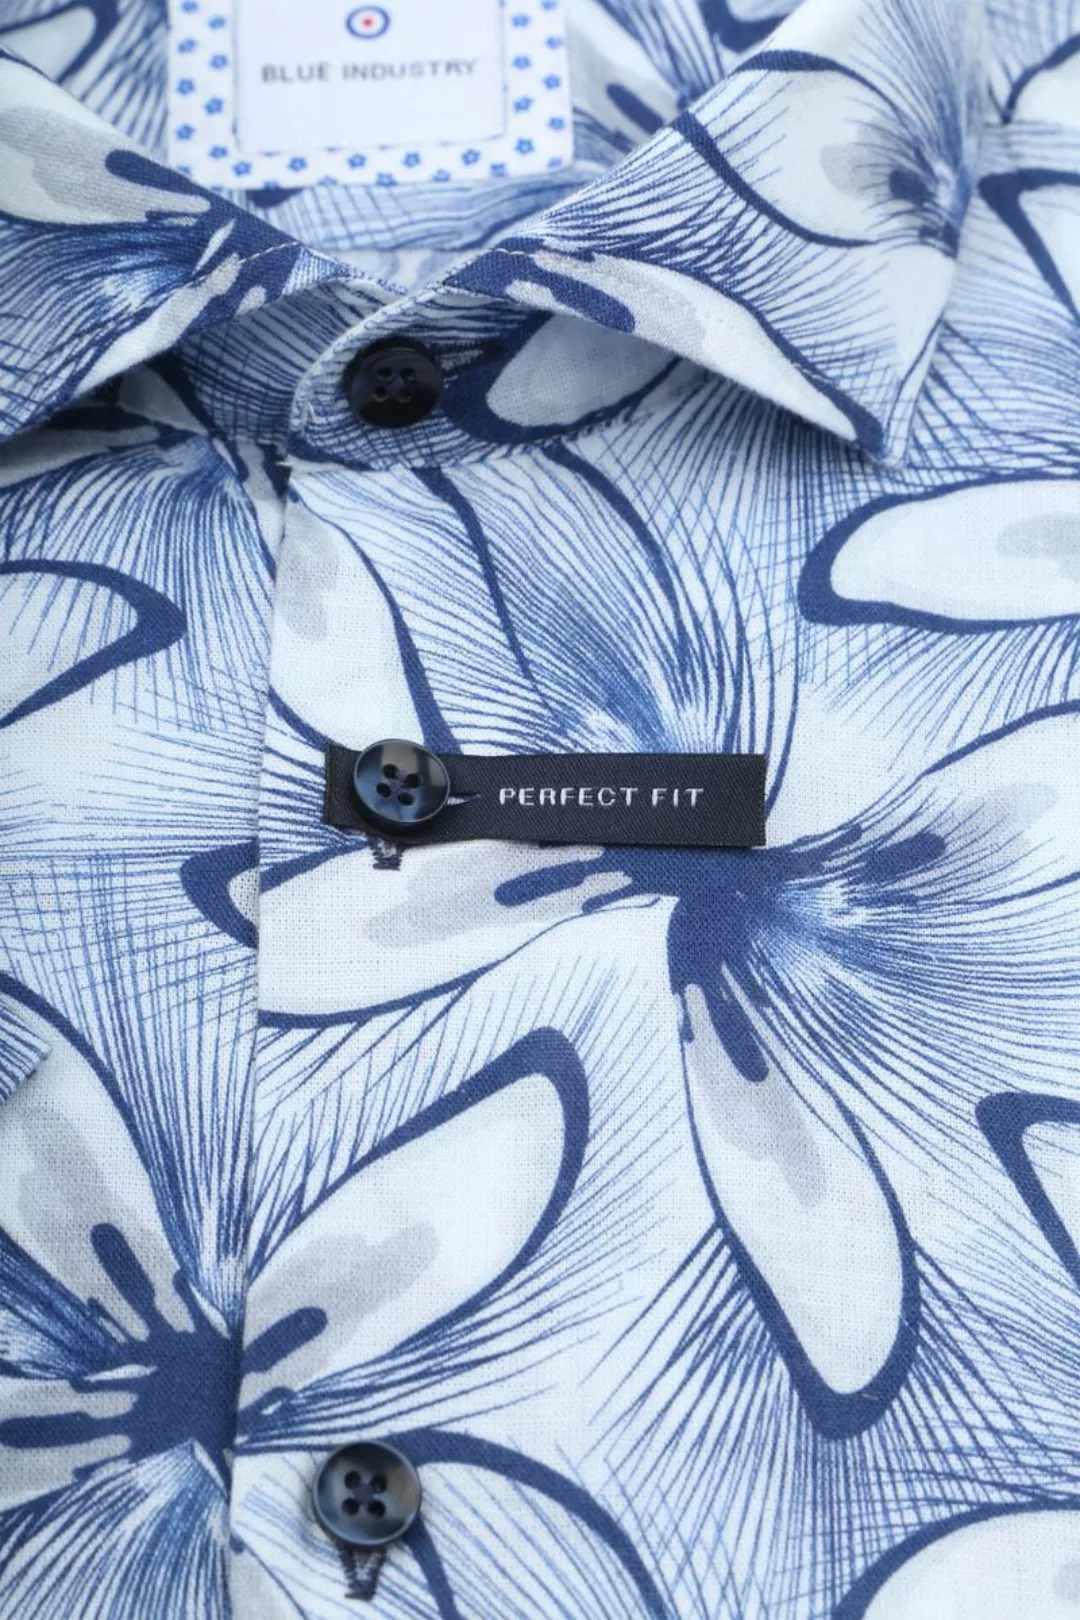 Blue Industry Short Sleeve Hemd Leinen Druck Blau - Größe 39 günstig online kaufen